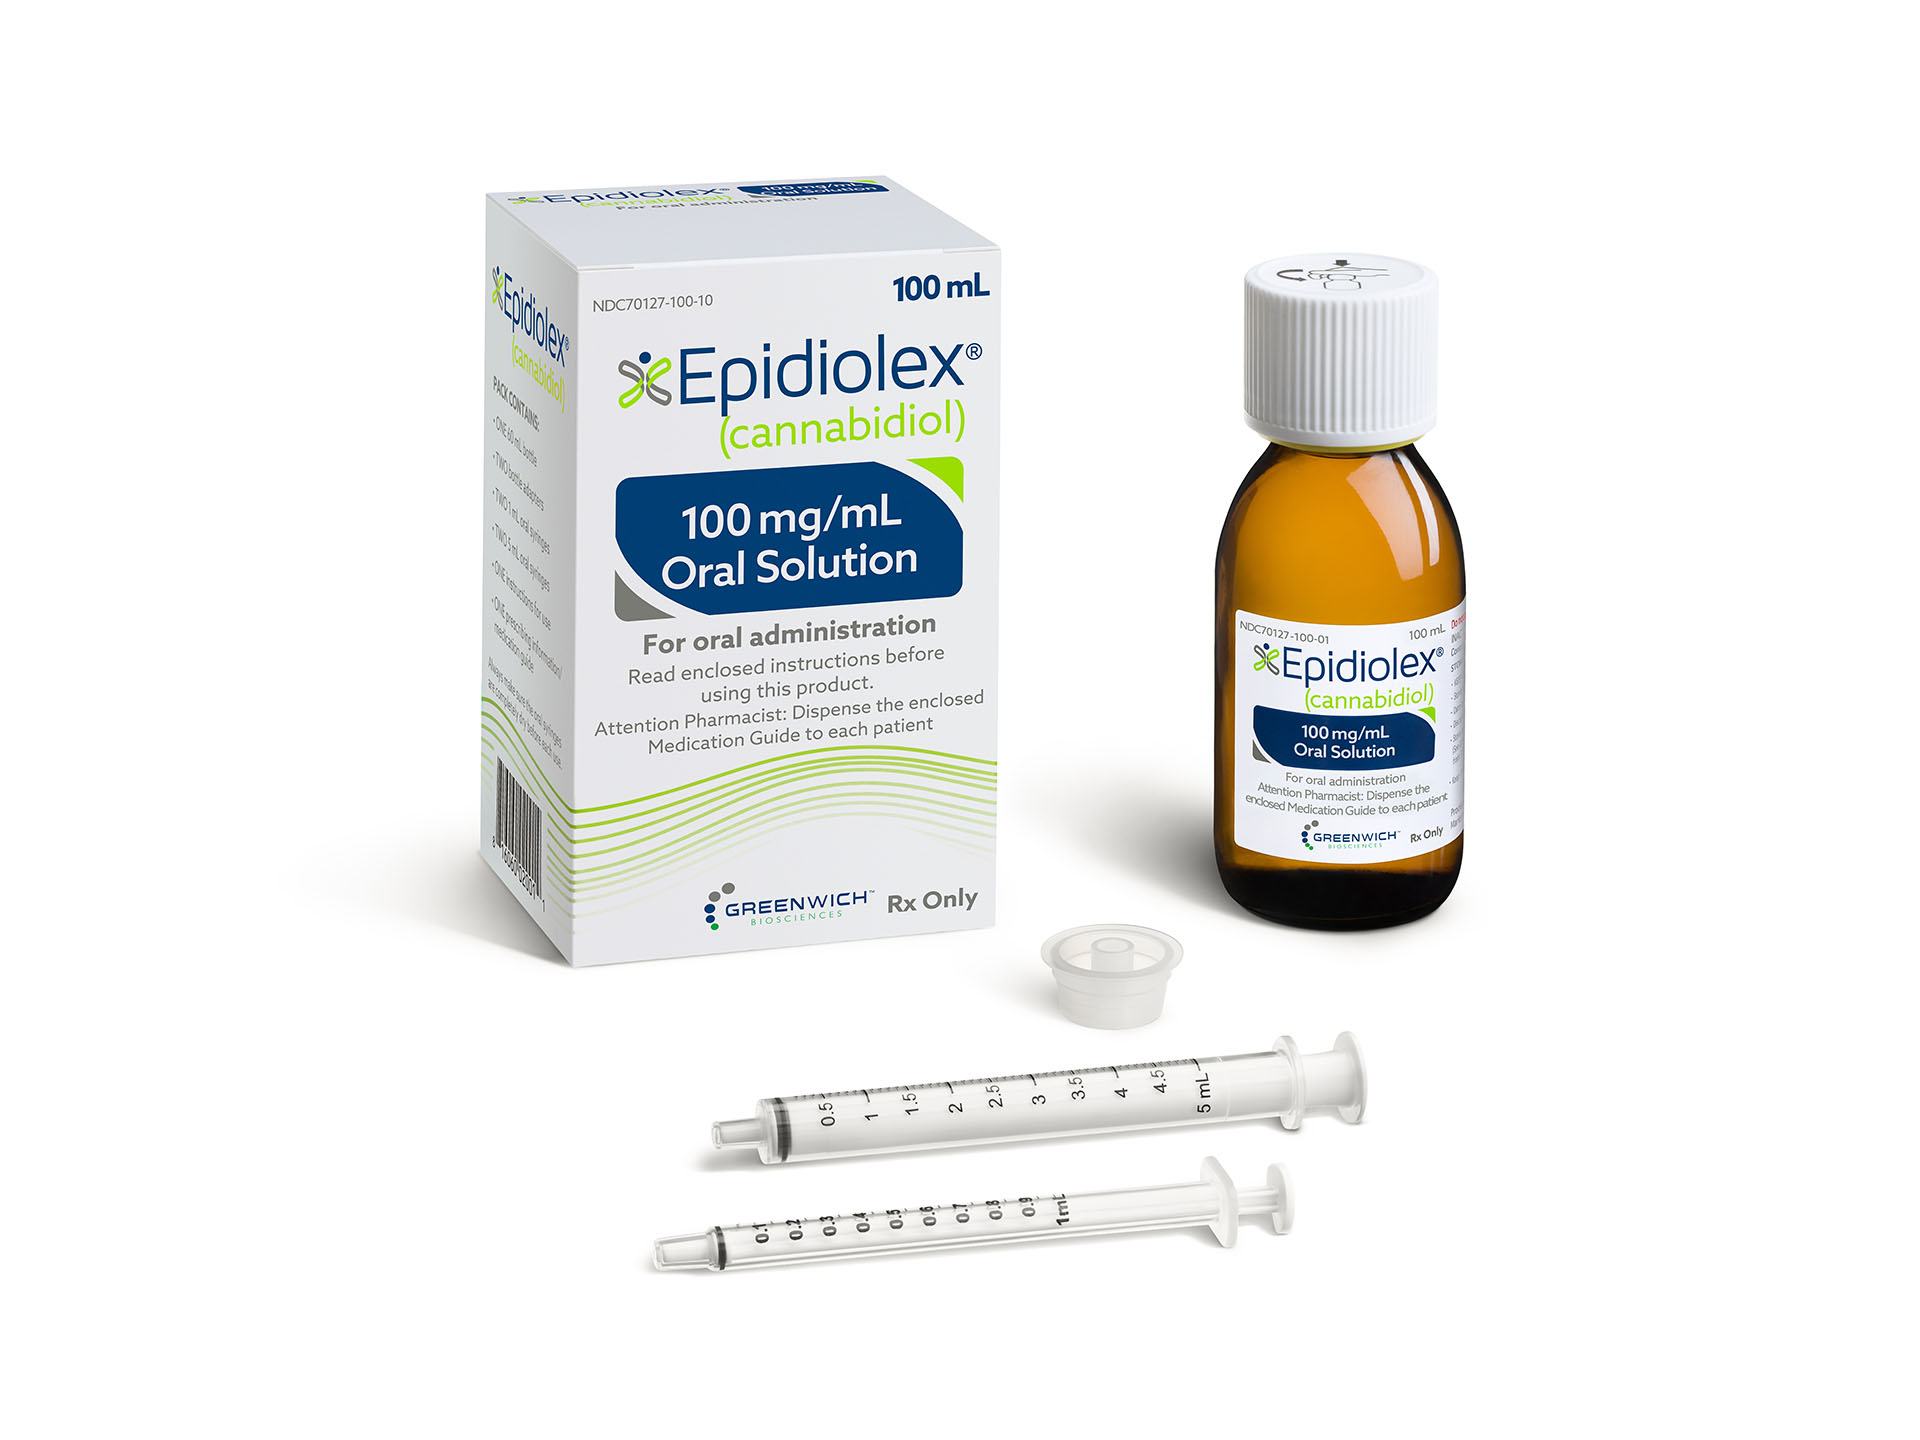 EPIDIOLEX Packaging